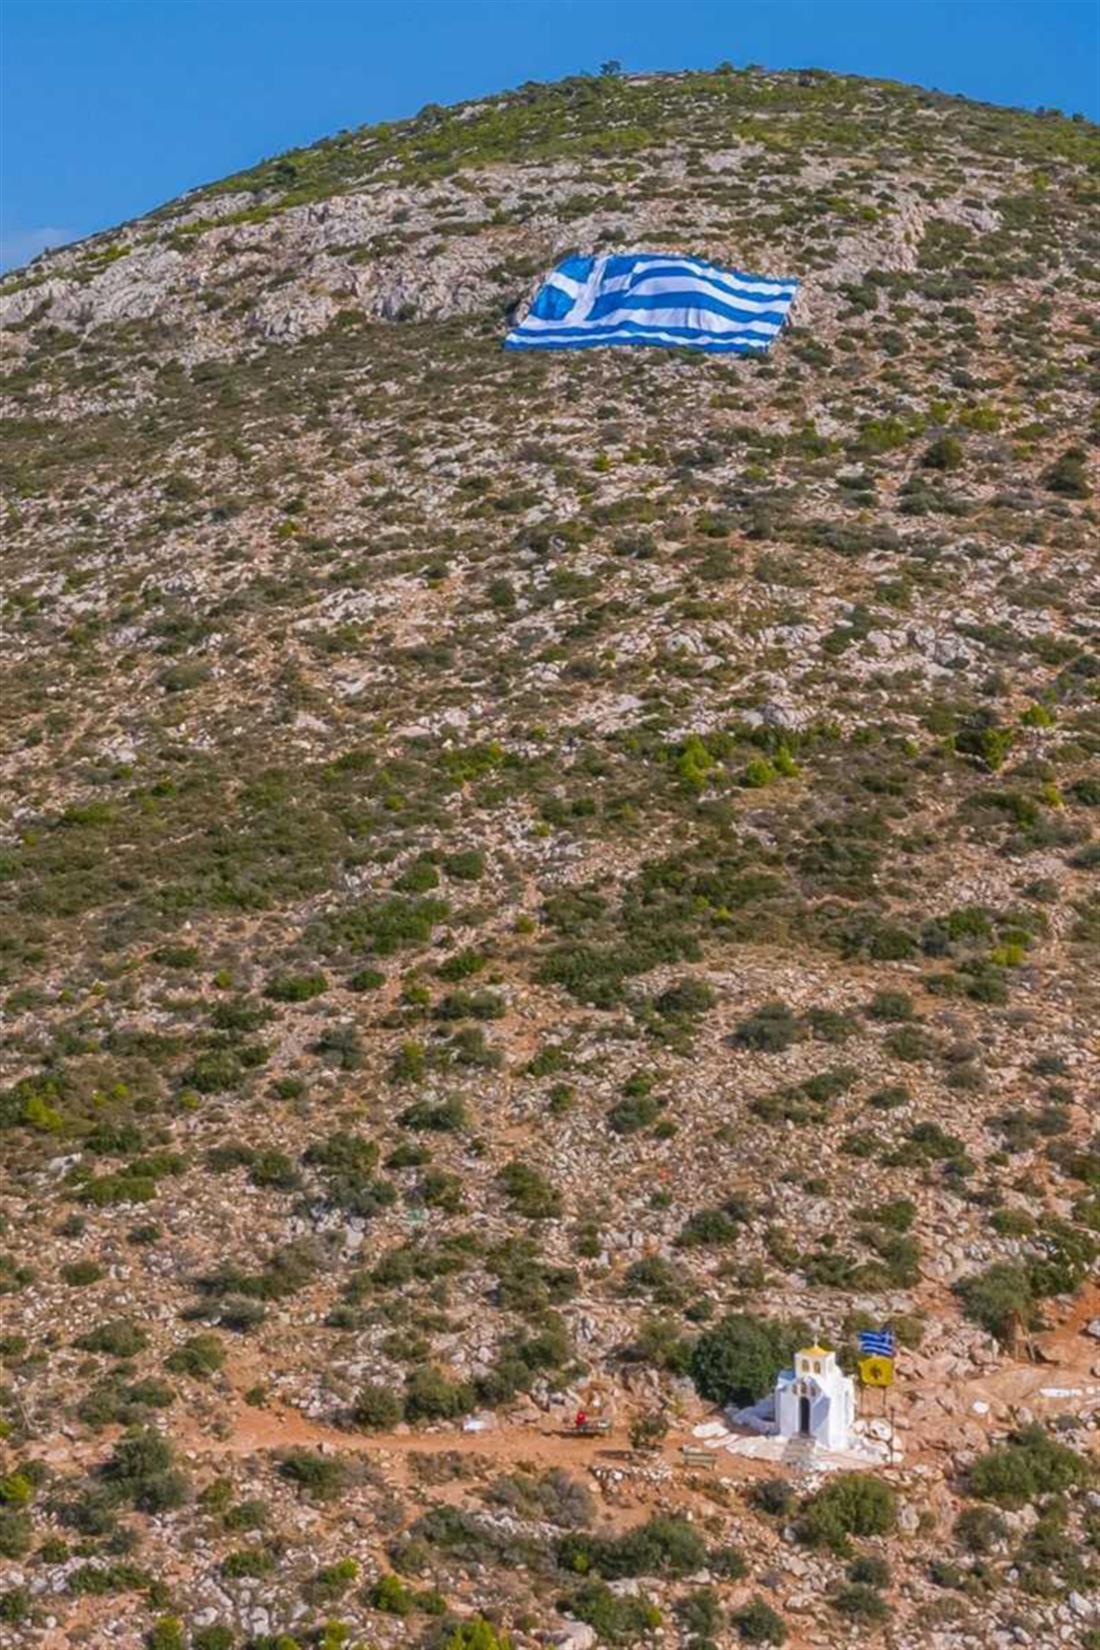 28η Οκτωβρίου - ελληνική σημαία - Υμηττός  - Δήμος Γλυφάδας